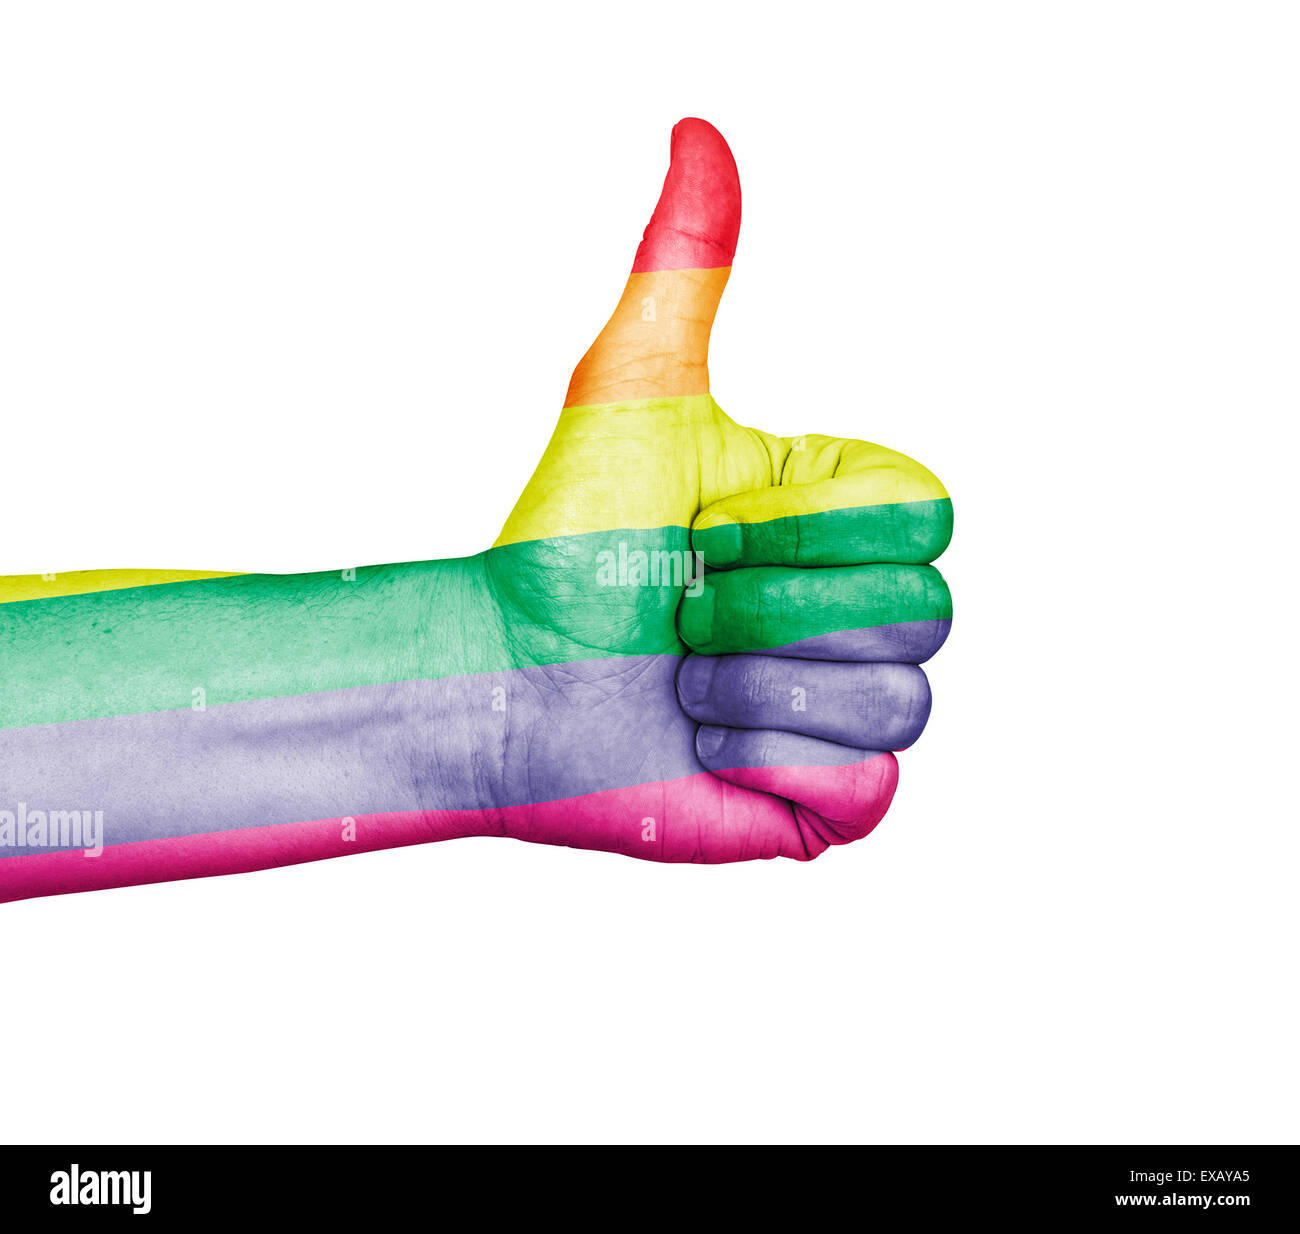 La main des hommes un coup de pouce d'approbation, peint avec la gay pride drapeau arc-en-ciel. Isolé sur un fond blanc avec clipping pat Banque D'Images